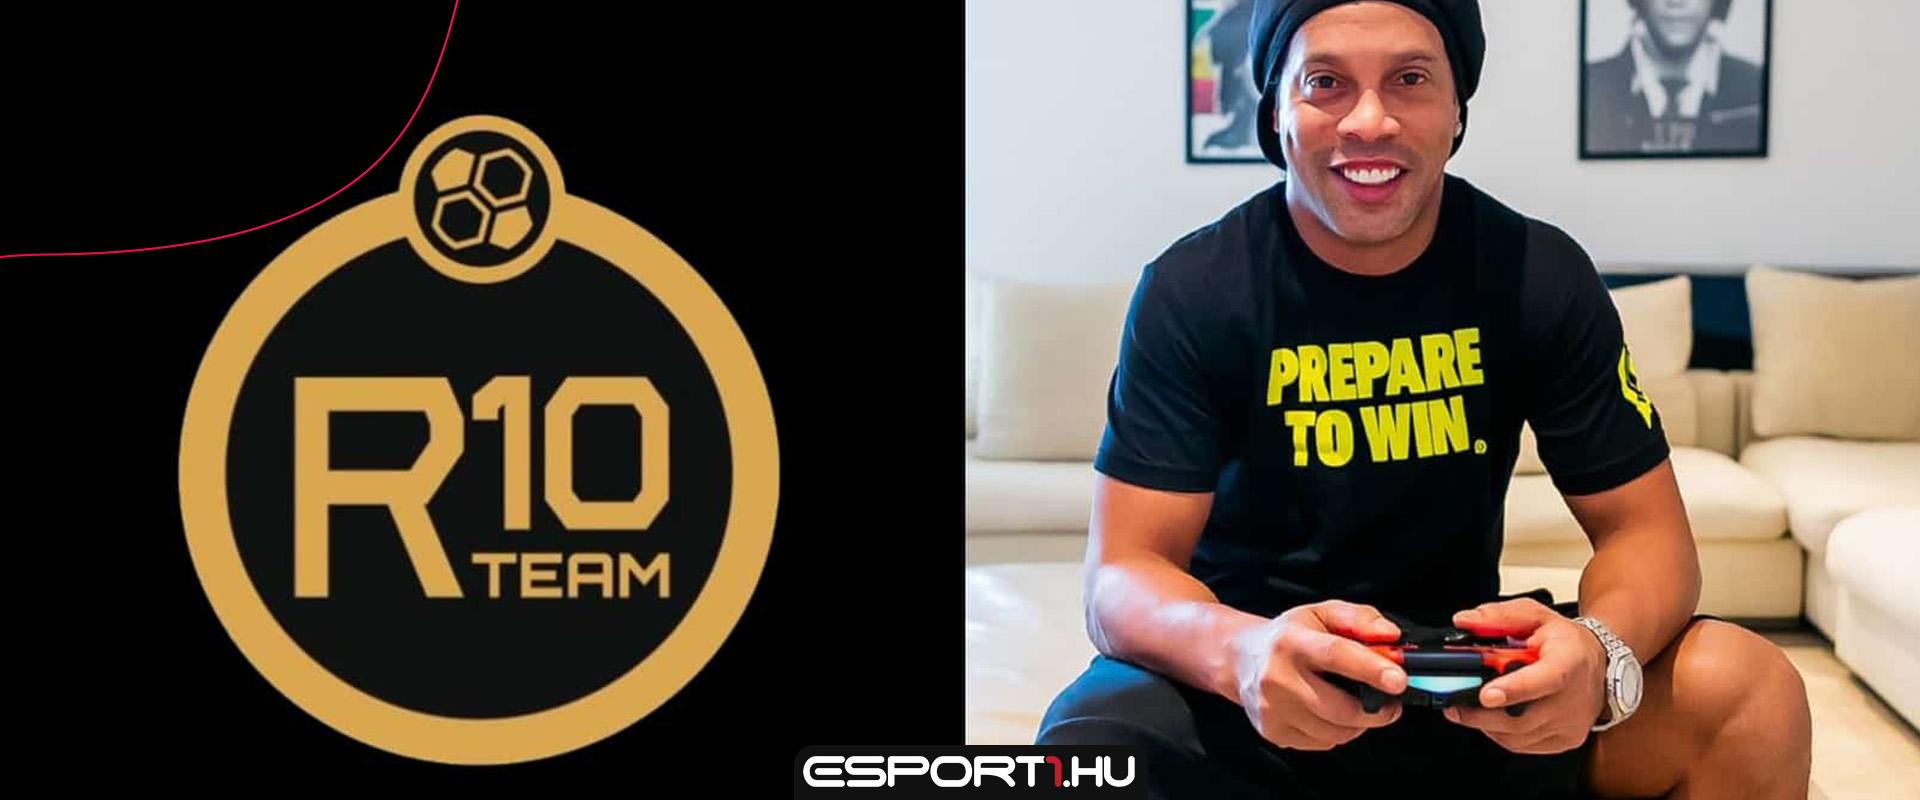 Egy életre eltiltotta a FIFA-tól Ronaldinho e-sport csapatának menedzserét az EA